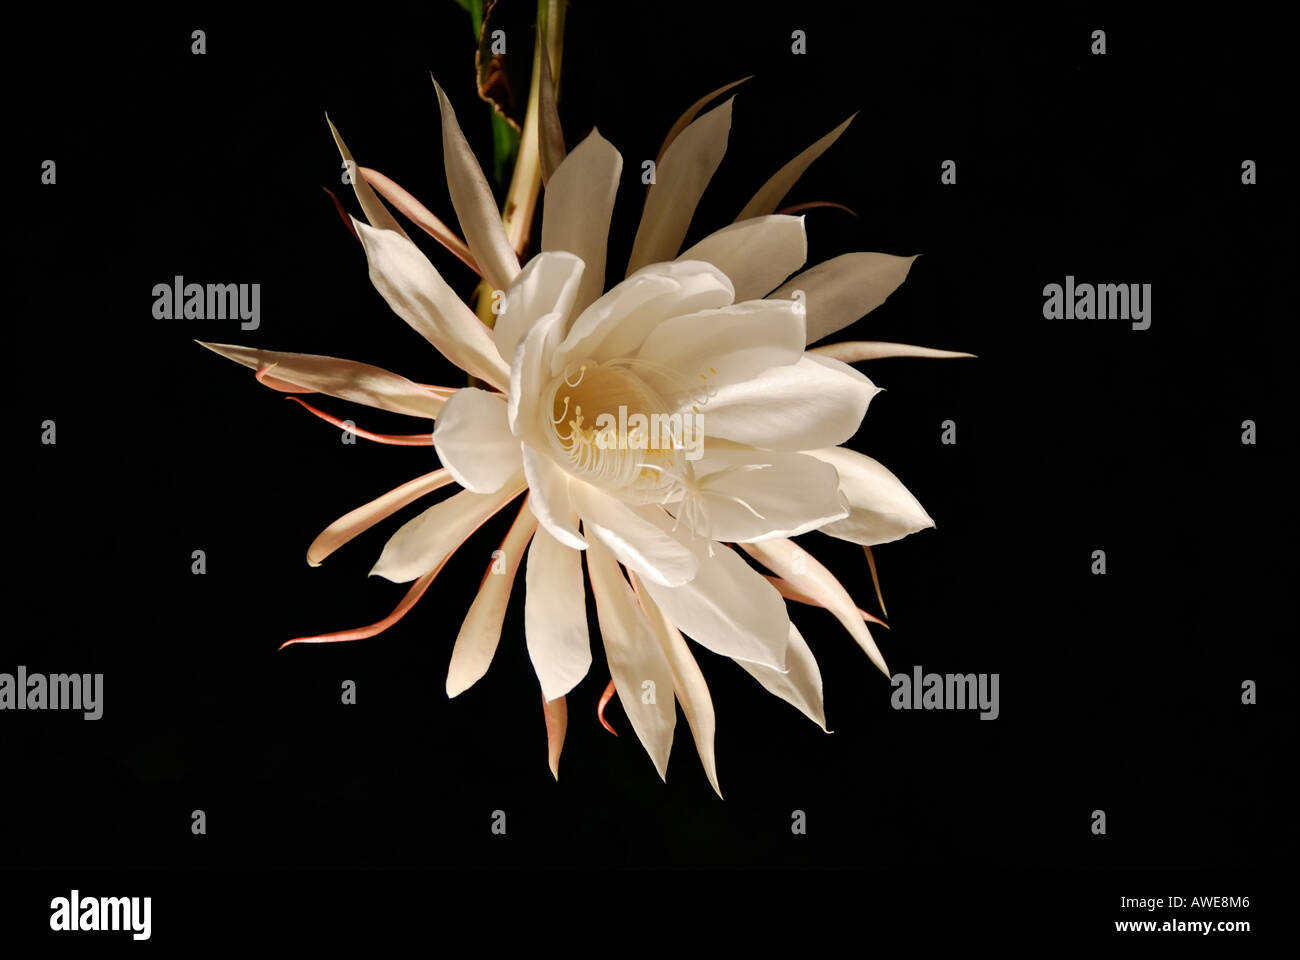 https://c8.alamy.com/comp/AWE8M6/night-blooming-cereus-flower-in-full-bloom-AWE8M6.jpg